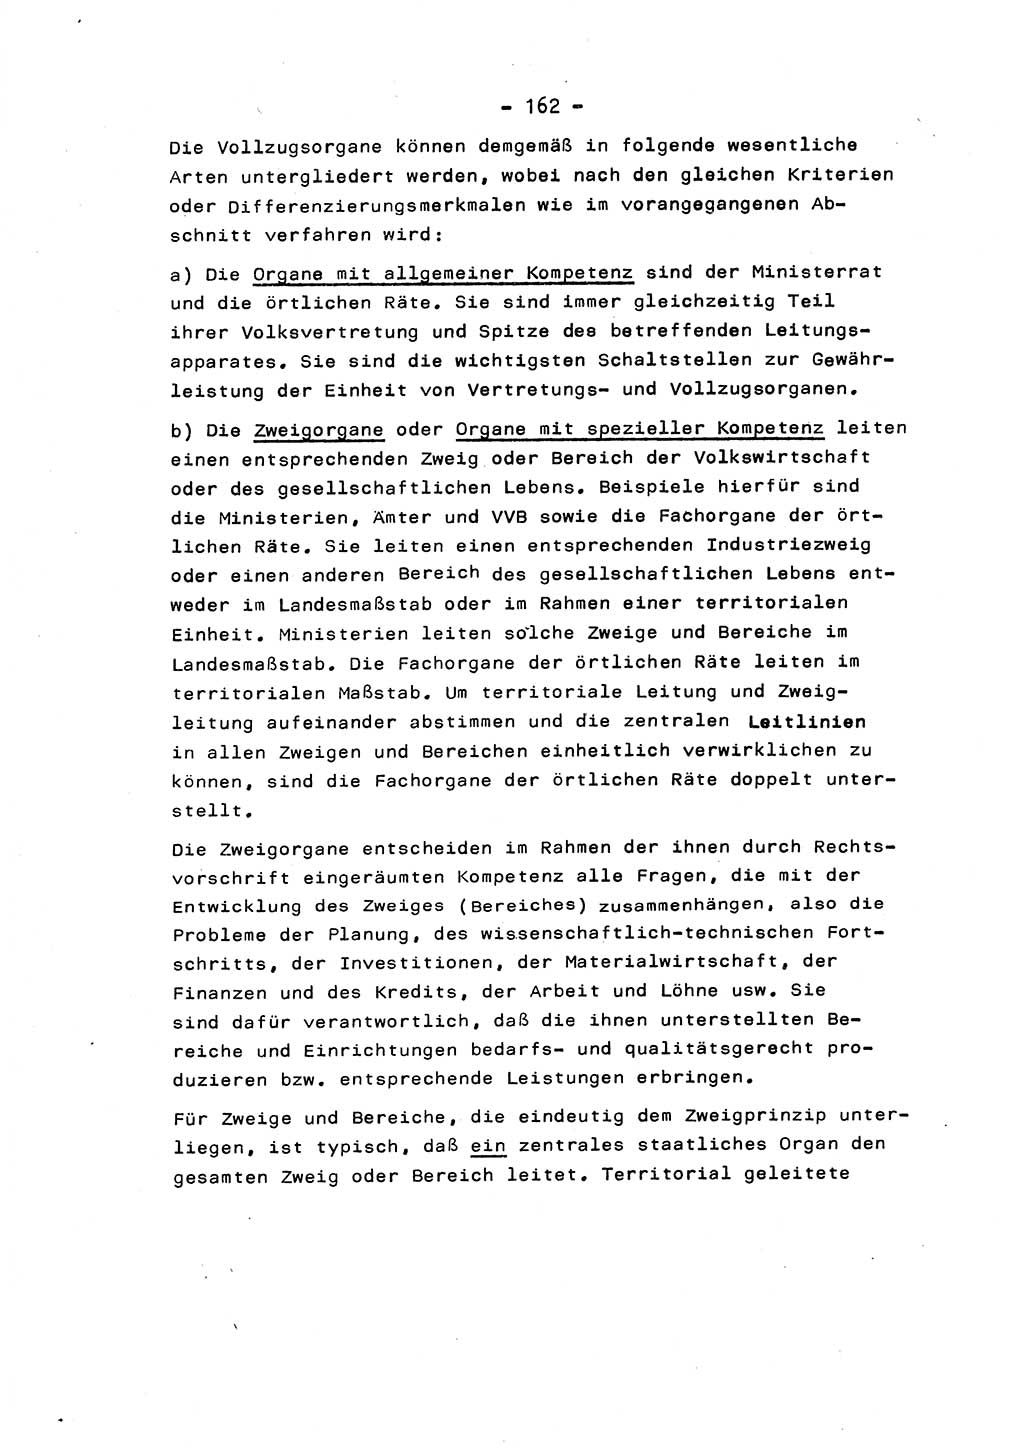 Marxistisch-leninistische Staats- und Rechtstheorie [Deutsche Demokratische Republik (DDR)] 1975, Seite 162 (ML St.-R.-Th. DDR 1975, S. 162)